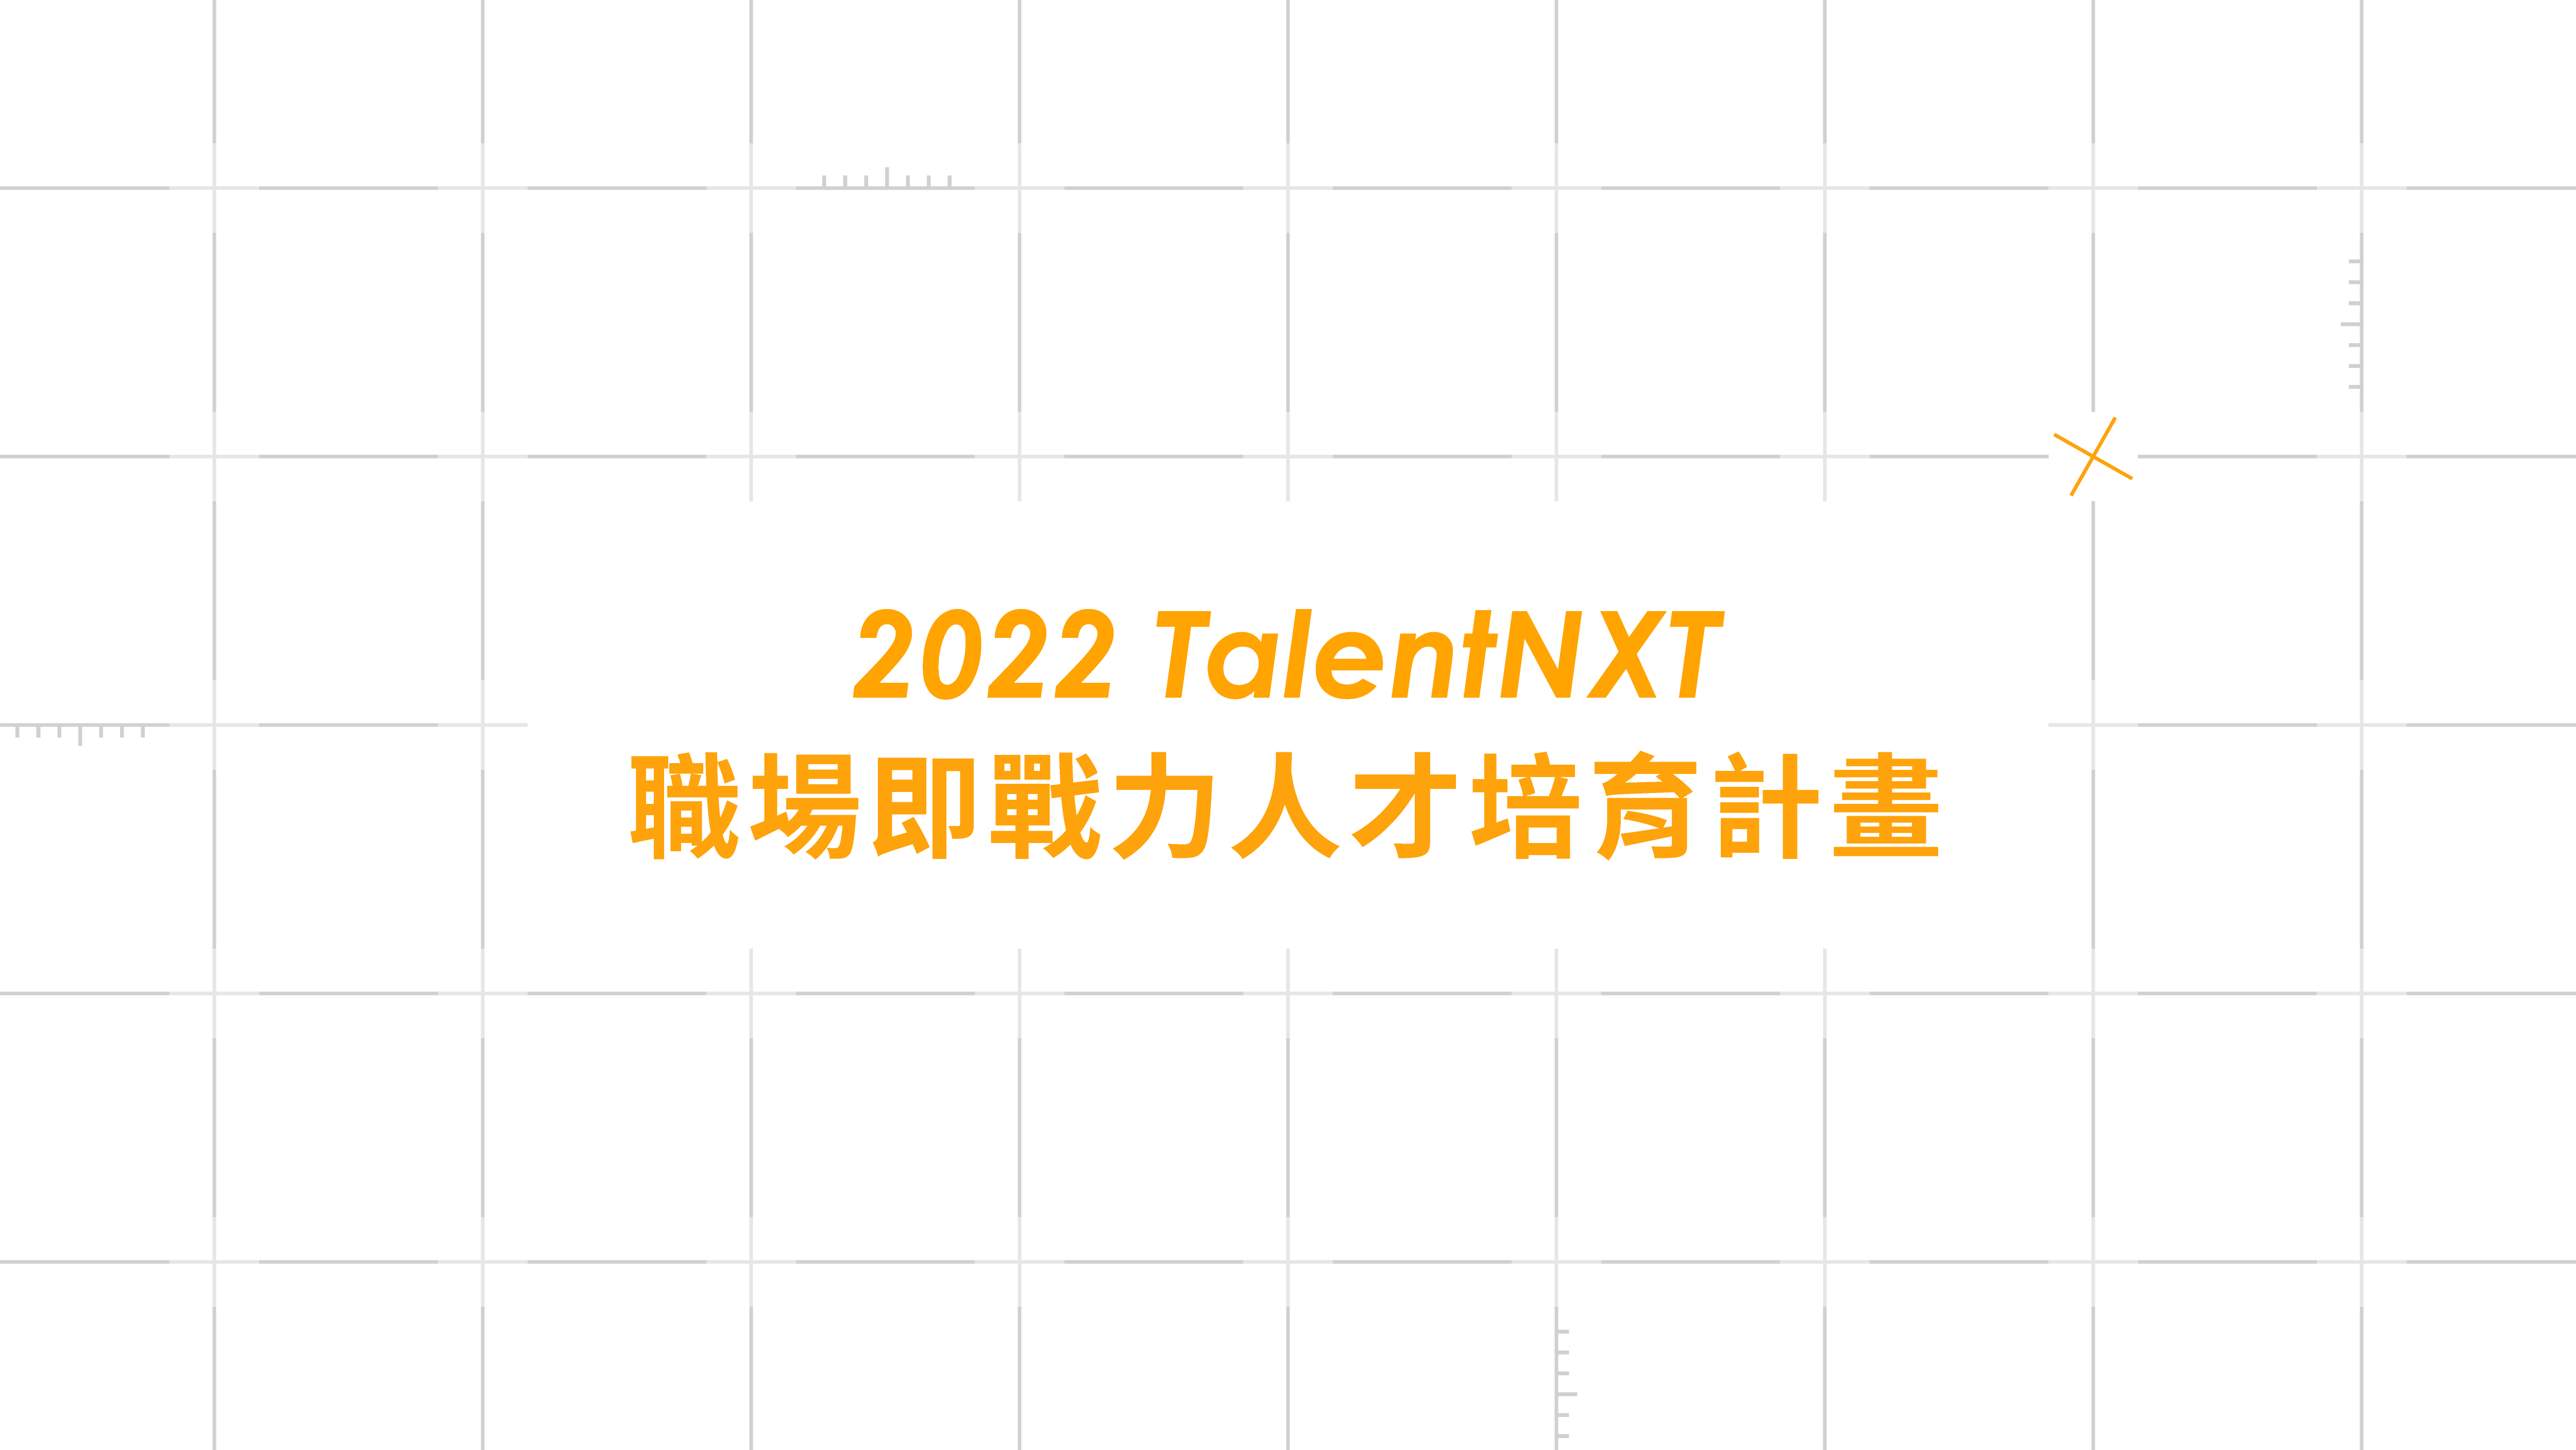 [免費培訓]TalentNXT職場即戰力人才培育計畫